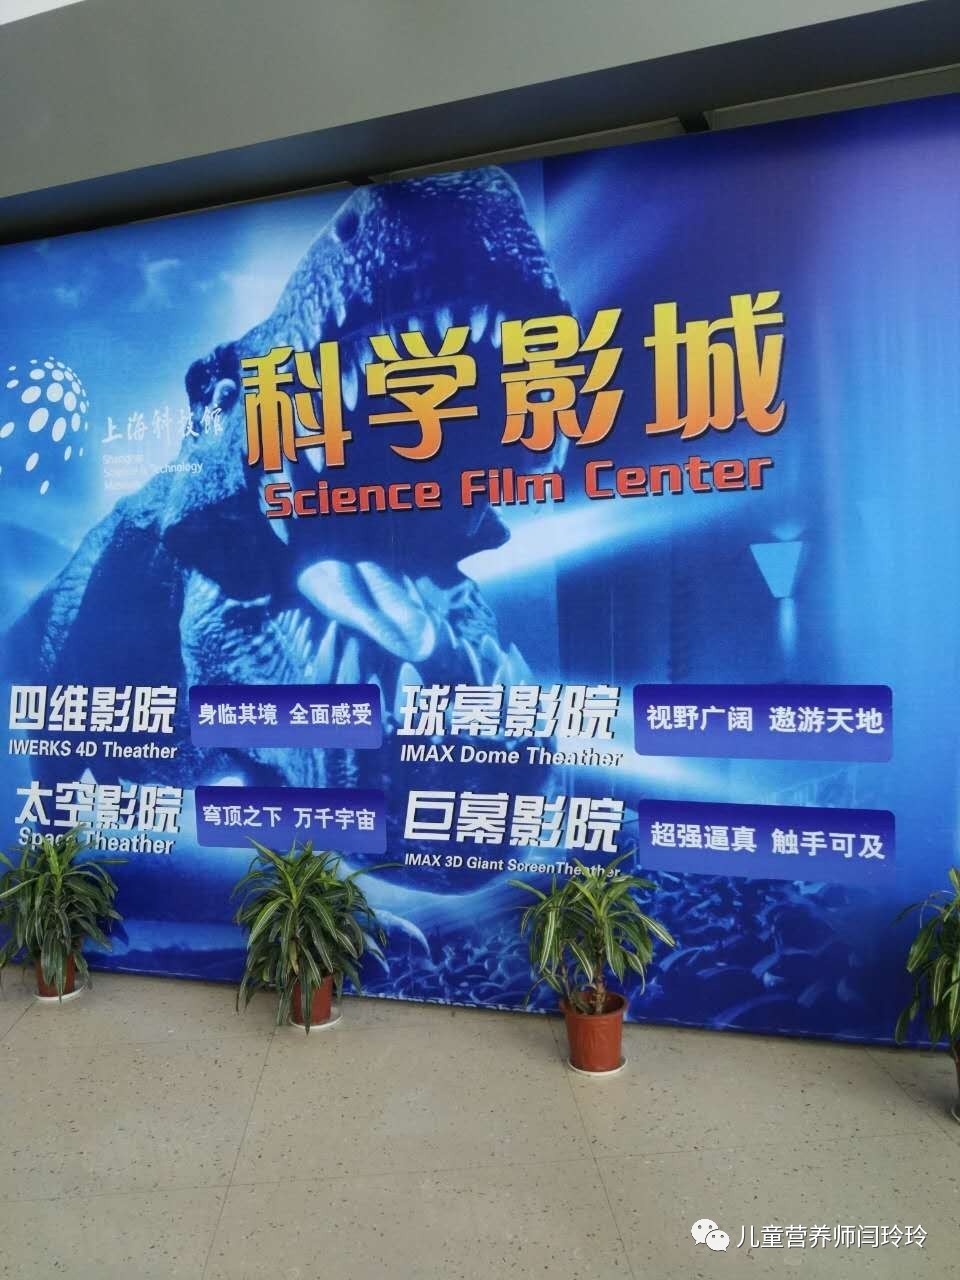 上海科技馆球幕影院图片